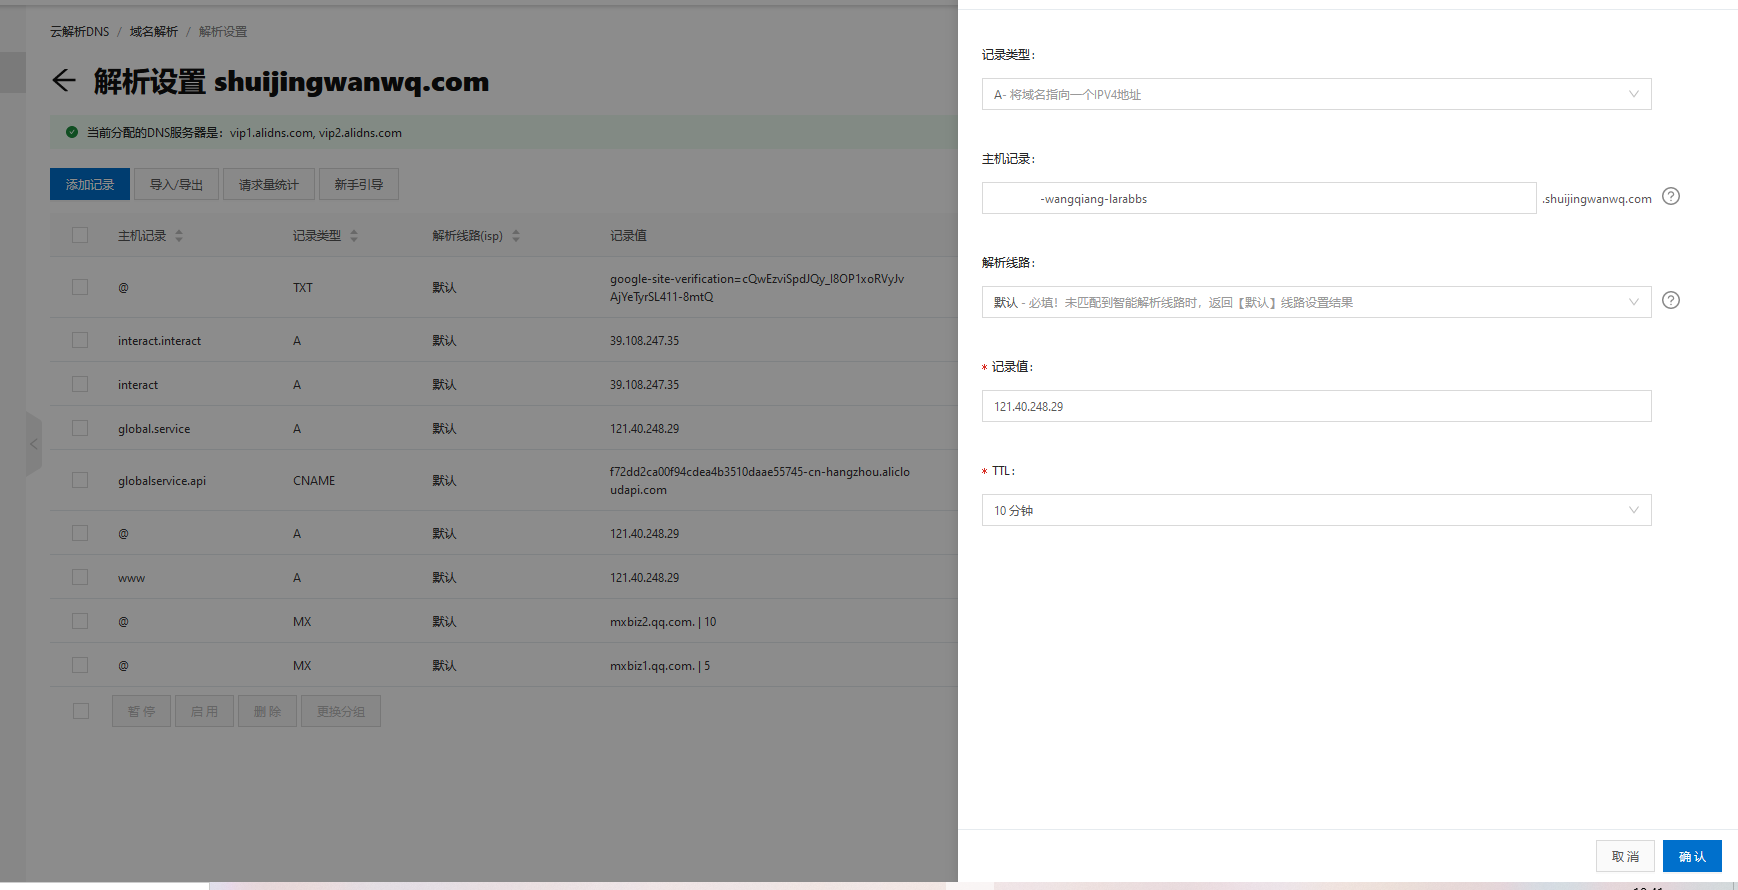 检查此域是否存在 DNS 记录。先在 DNS 中添加相应的域名：fanxiapp-wangqiang-larabbs.shuijingwanwq.com